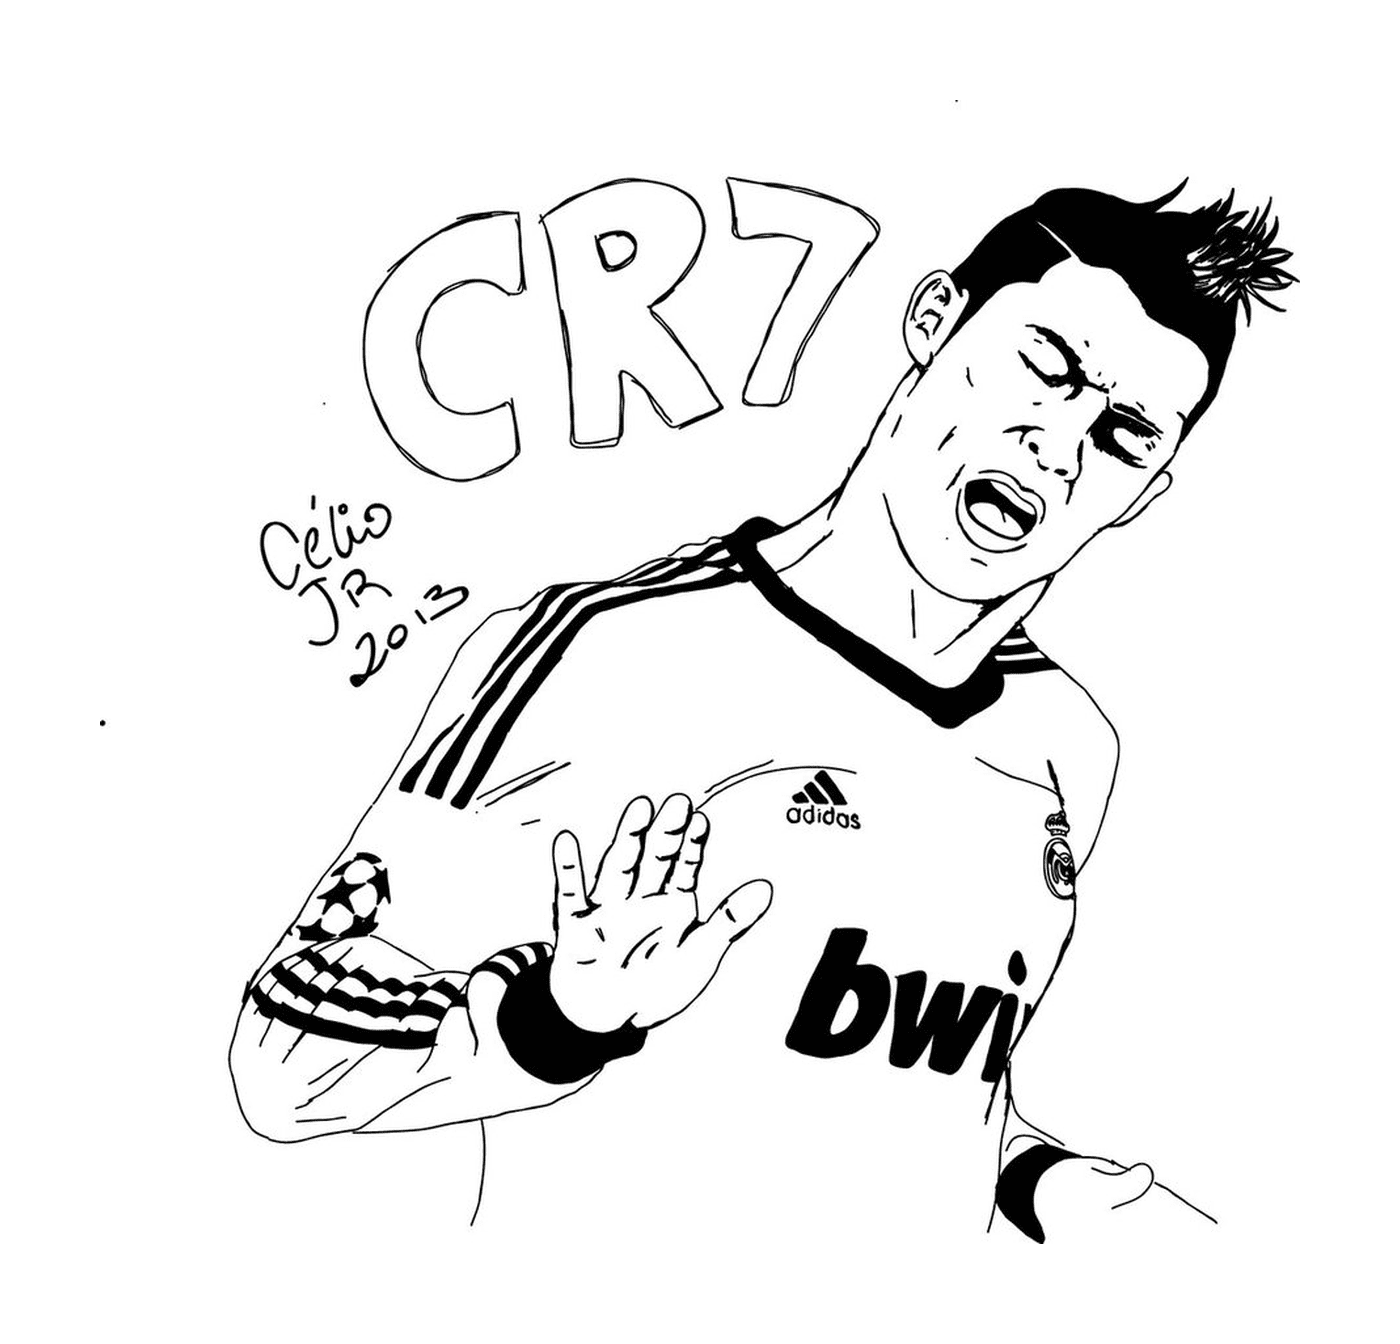  Cristiano Ronaldo comemora golo 